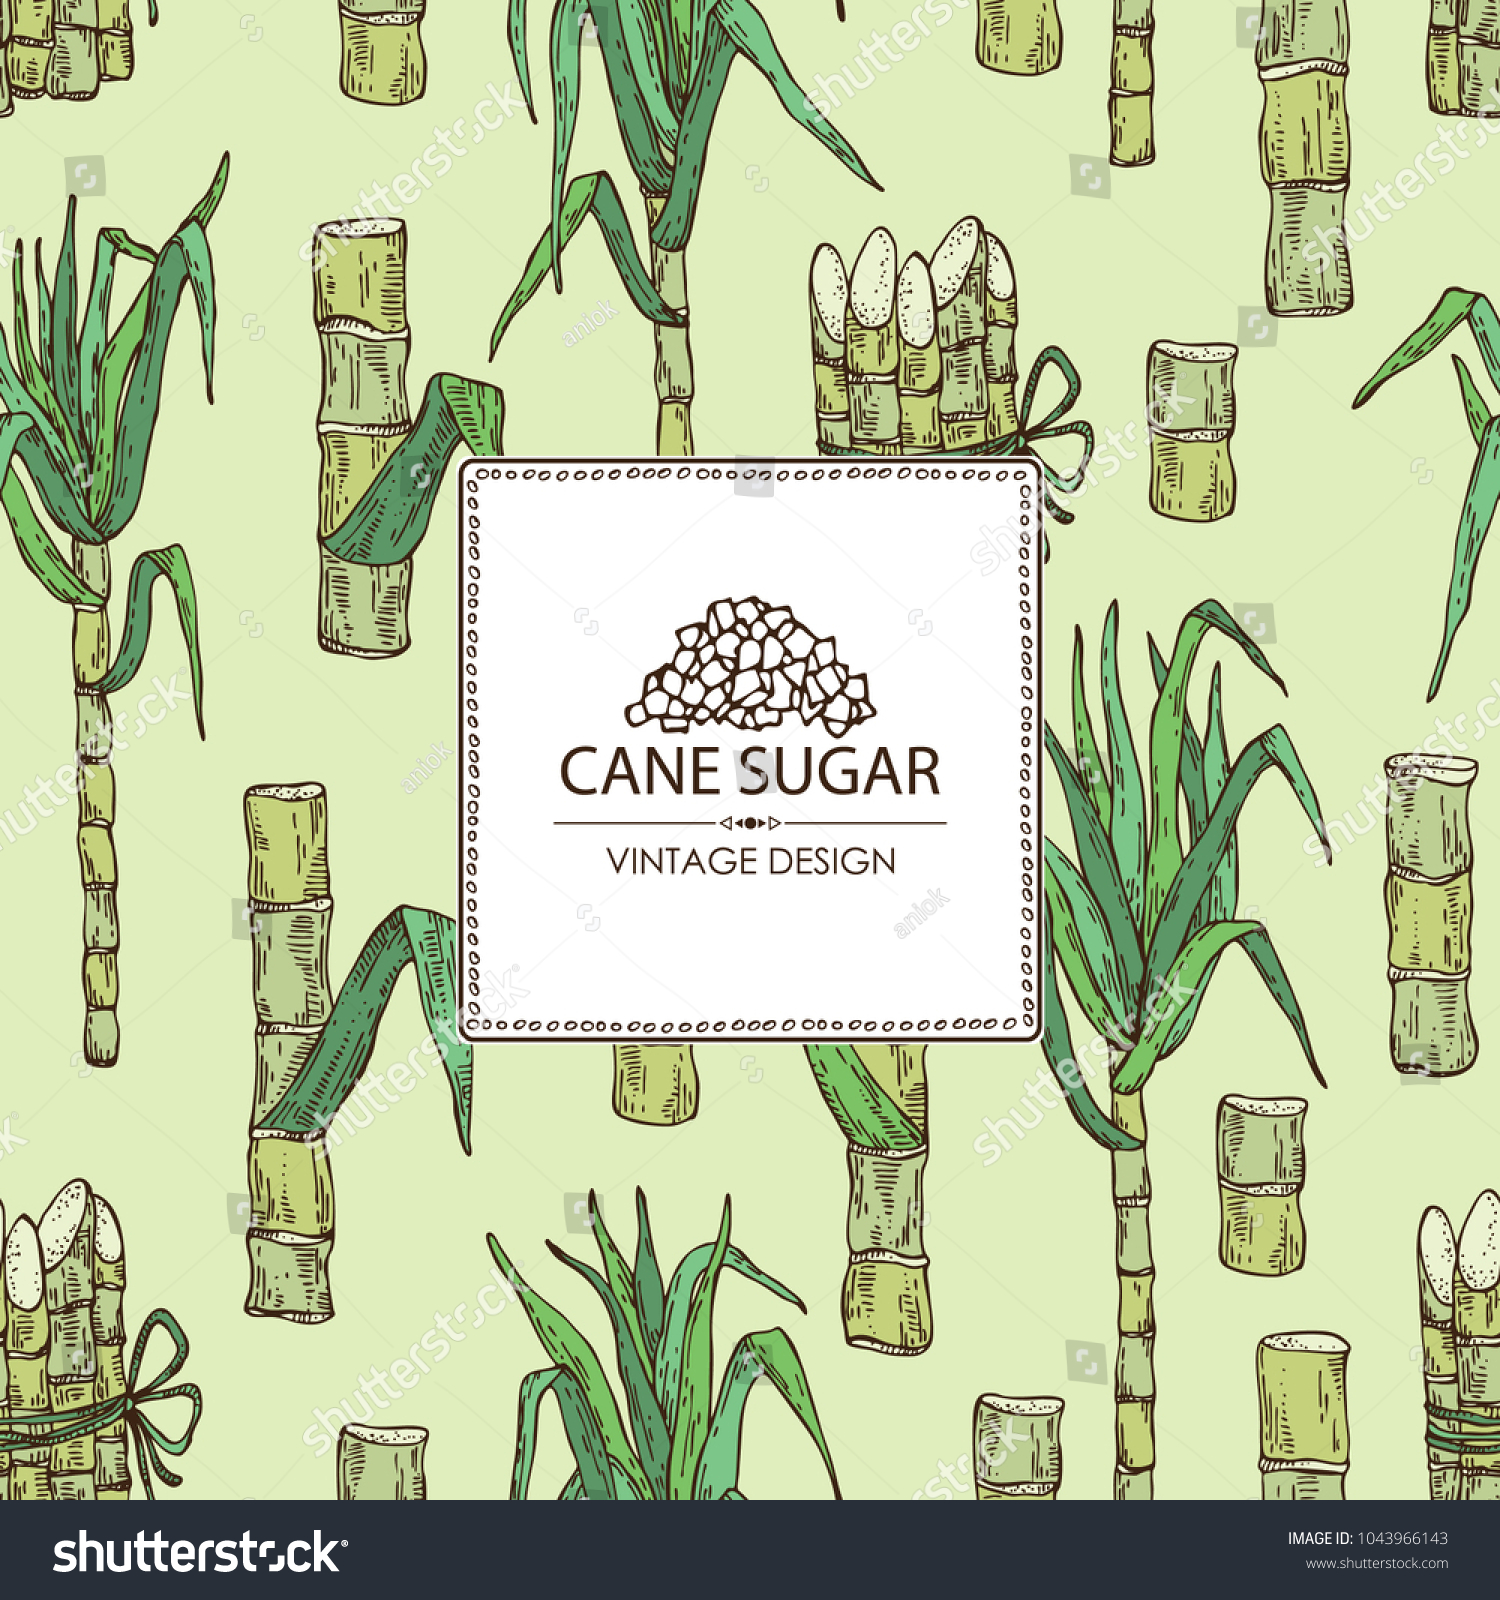 Background Sugarcane Cane Sugar Sugarcane Vector Vector De Stock Libre De Regalías 1043966143 